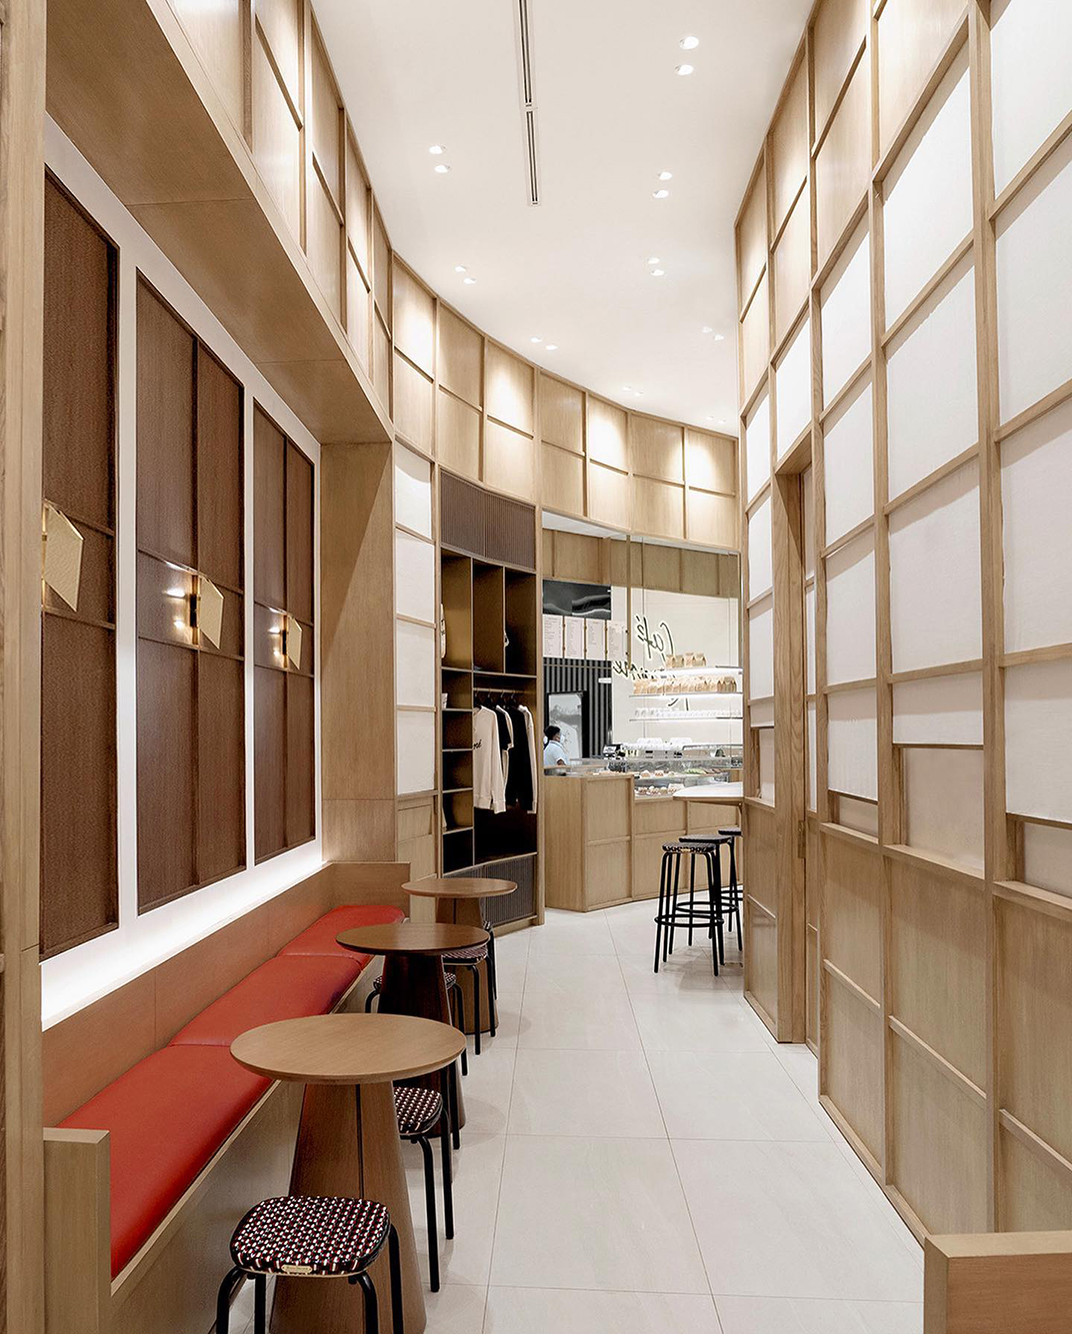 咖啡店Cafe Kitsune 菲律宾 北京 上海 成都 武汉 杭州 广州 澳门 logo设计 vi设计 空间设计